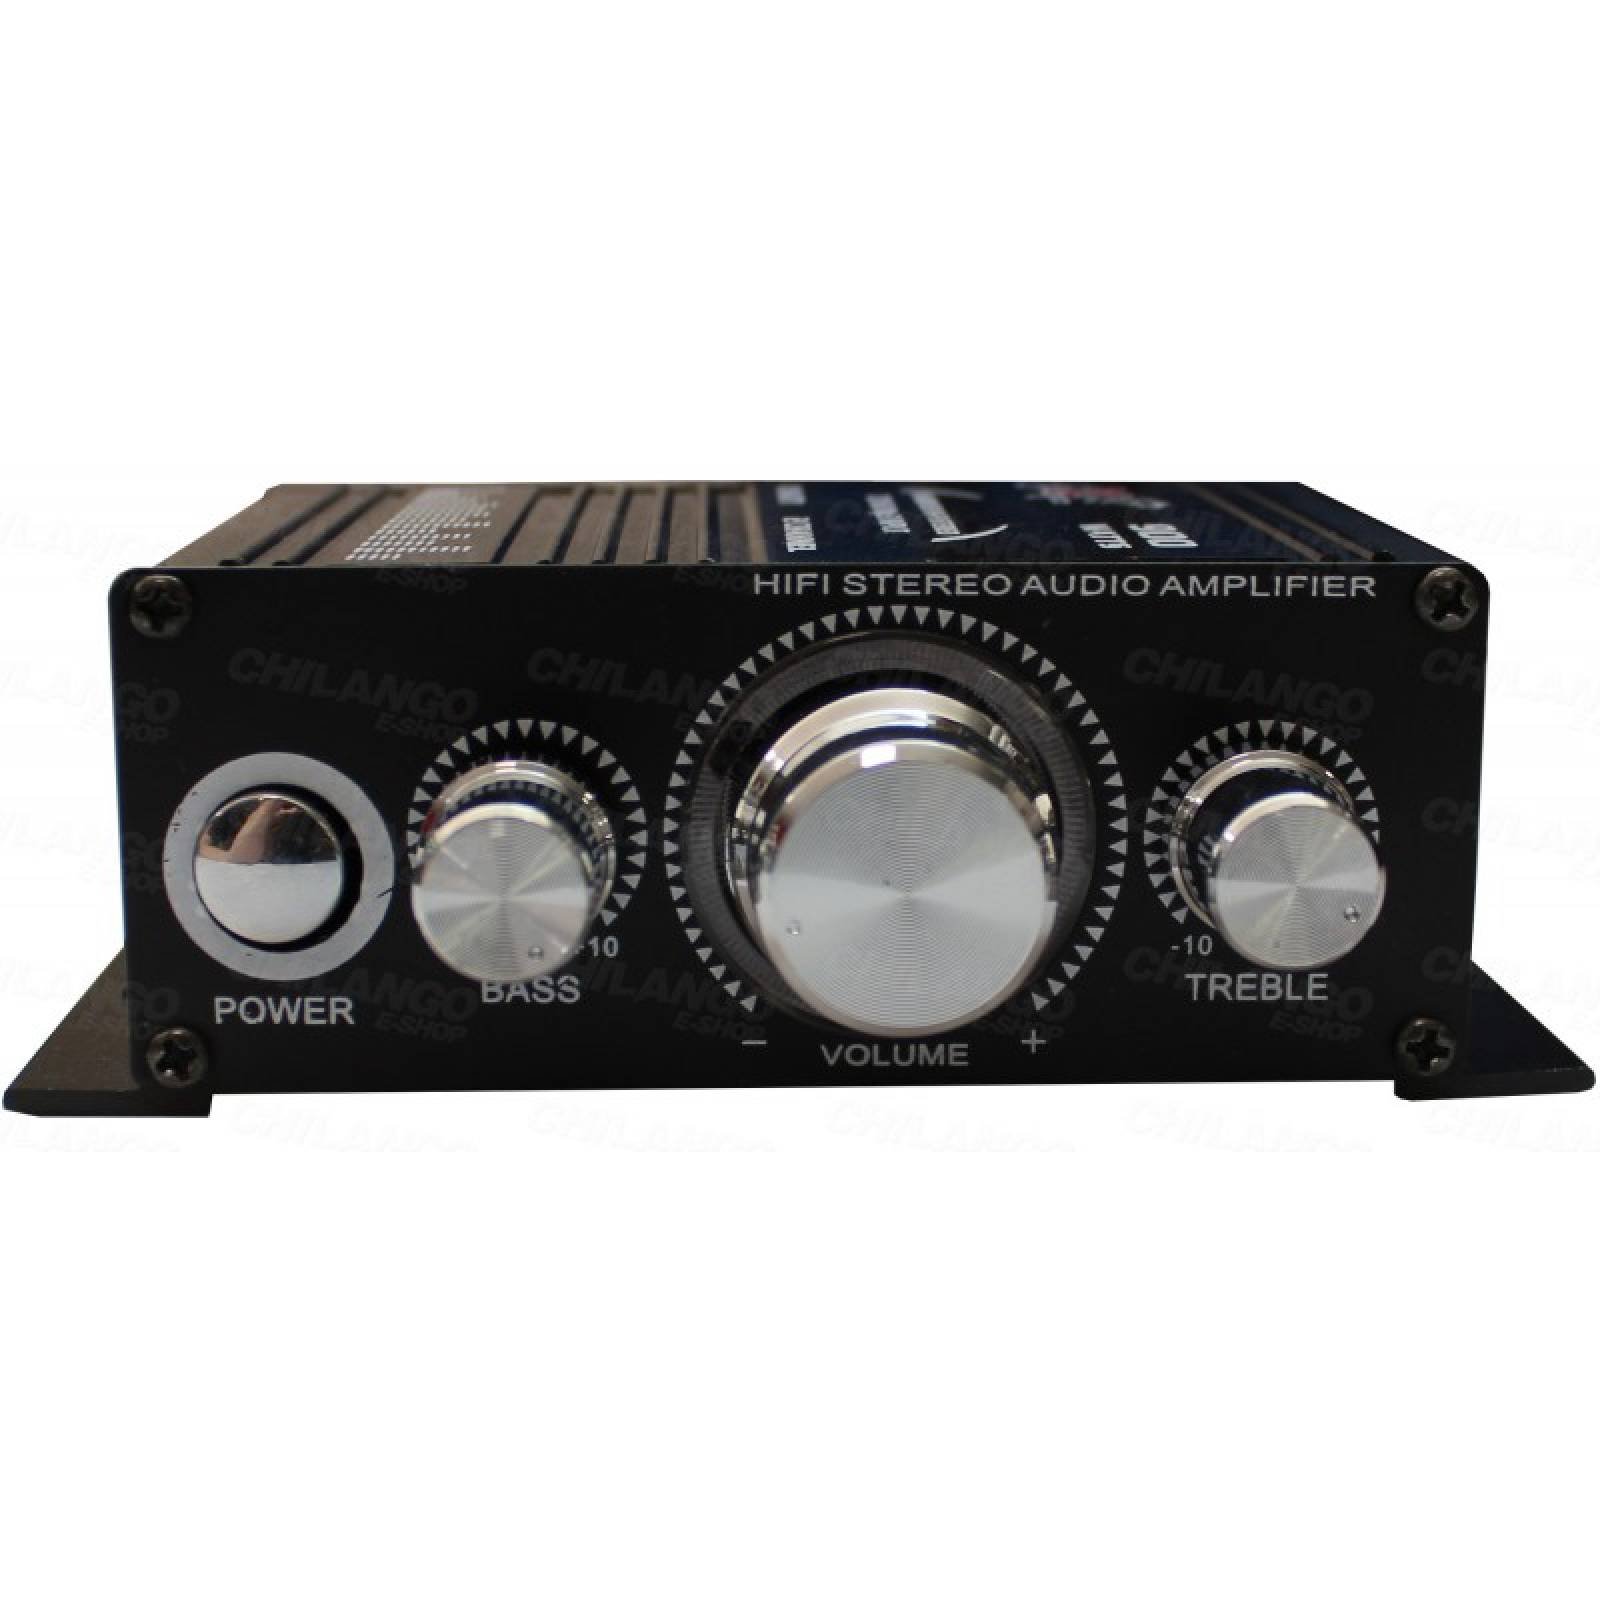 Amplificador Dxr Mini 2 Canales 900w 